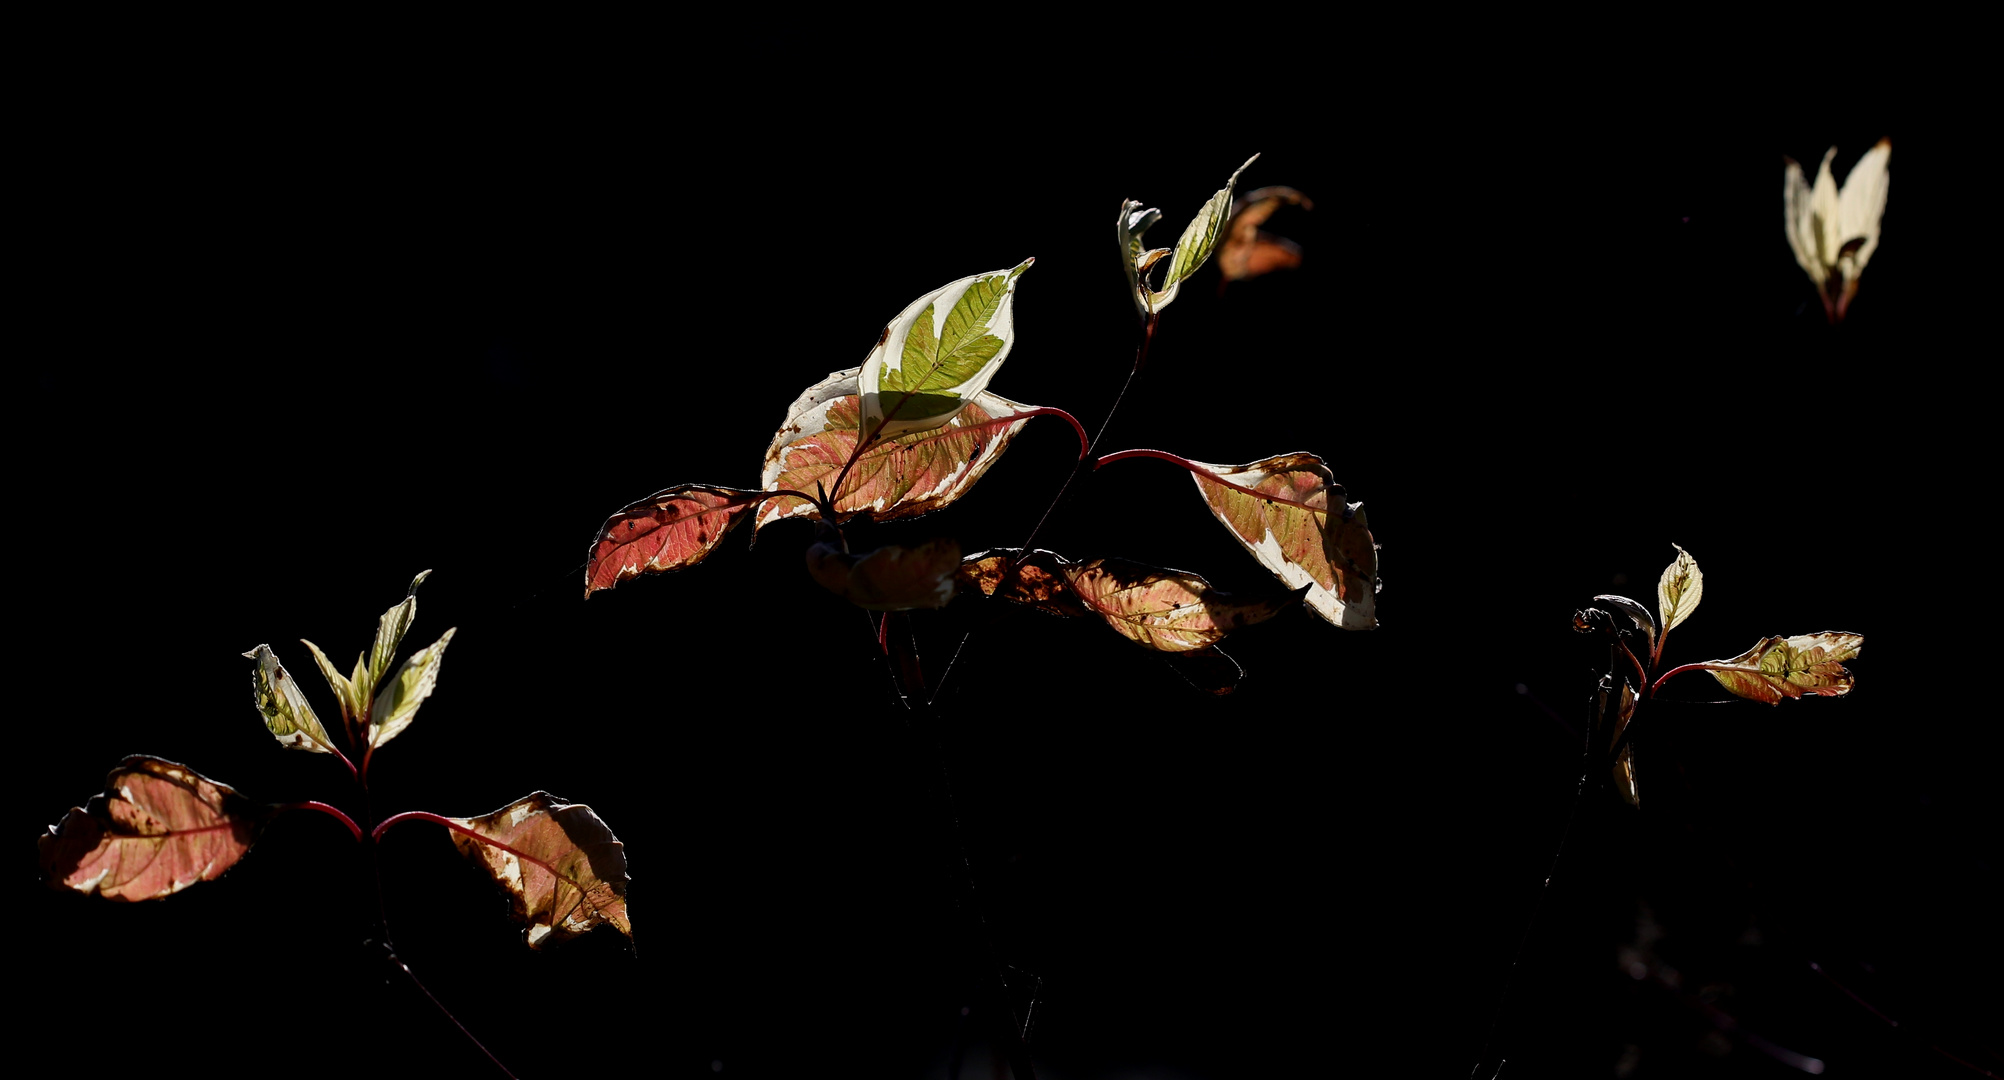 Blätter im Gegenlicht